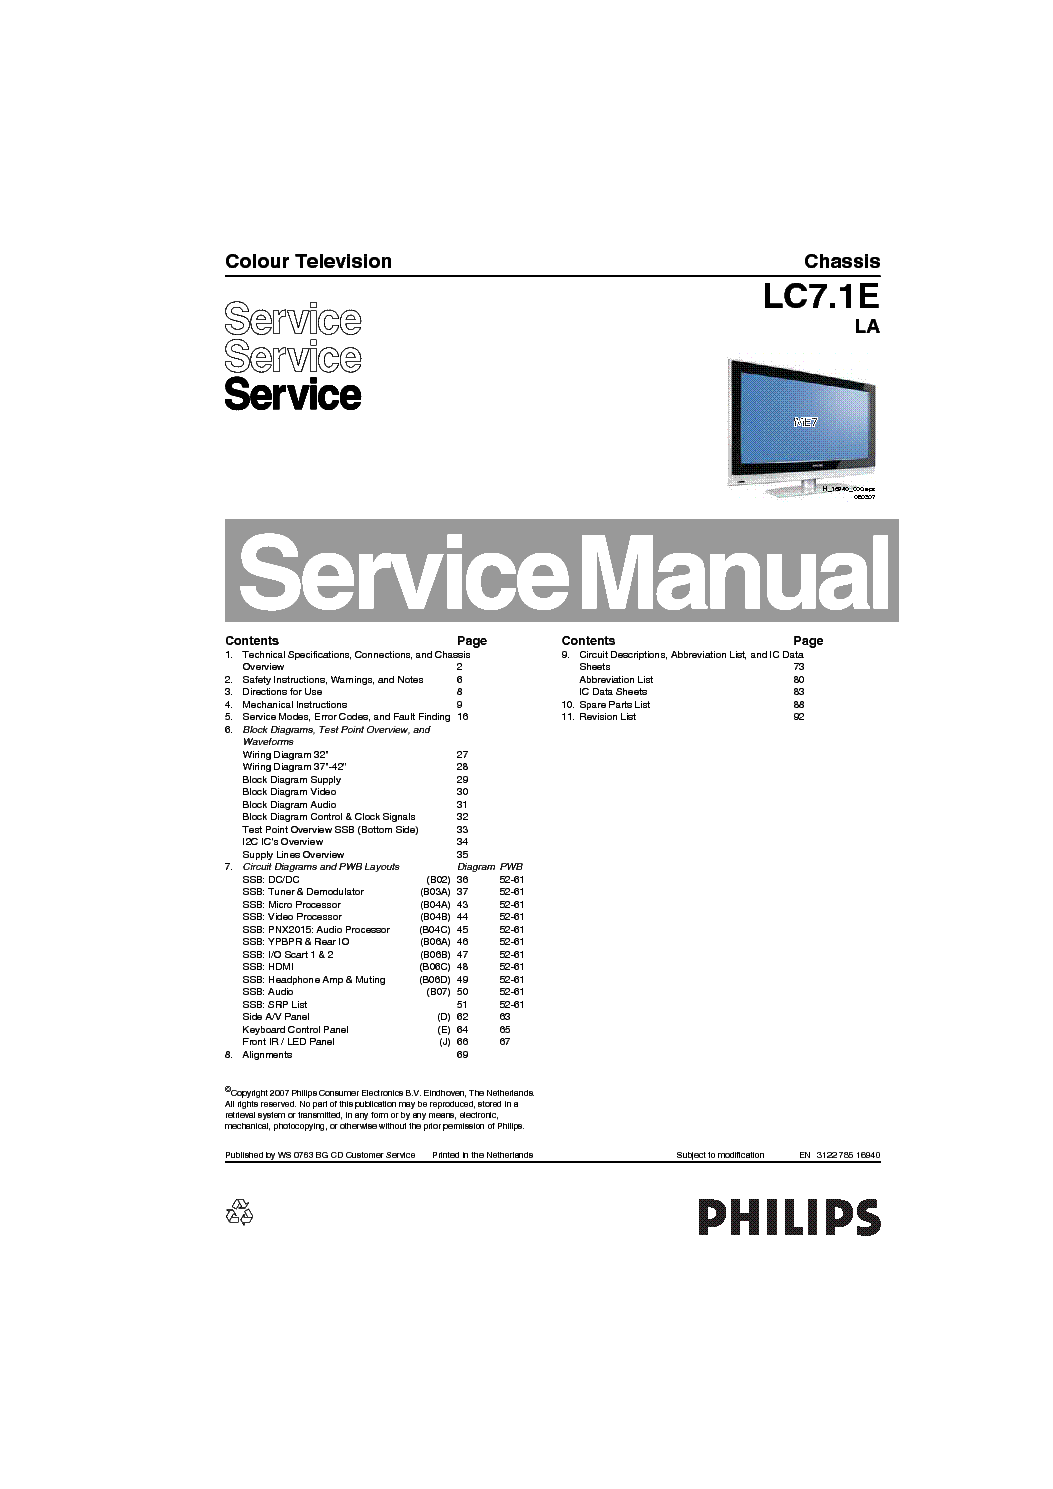 PHILIPS CHASSIS LC7.1E-LA SM service manual (1st page)